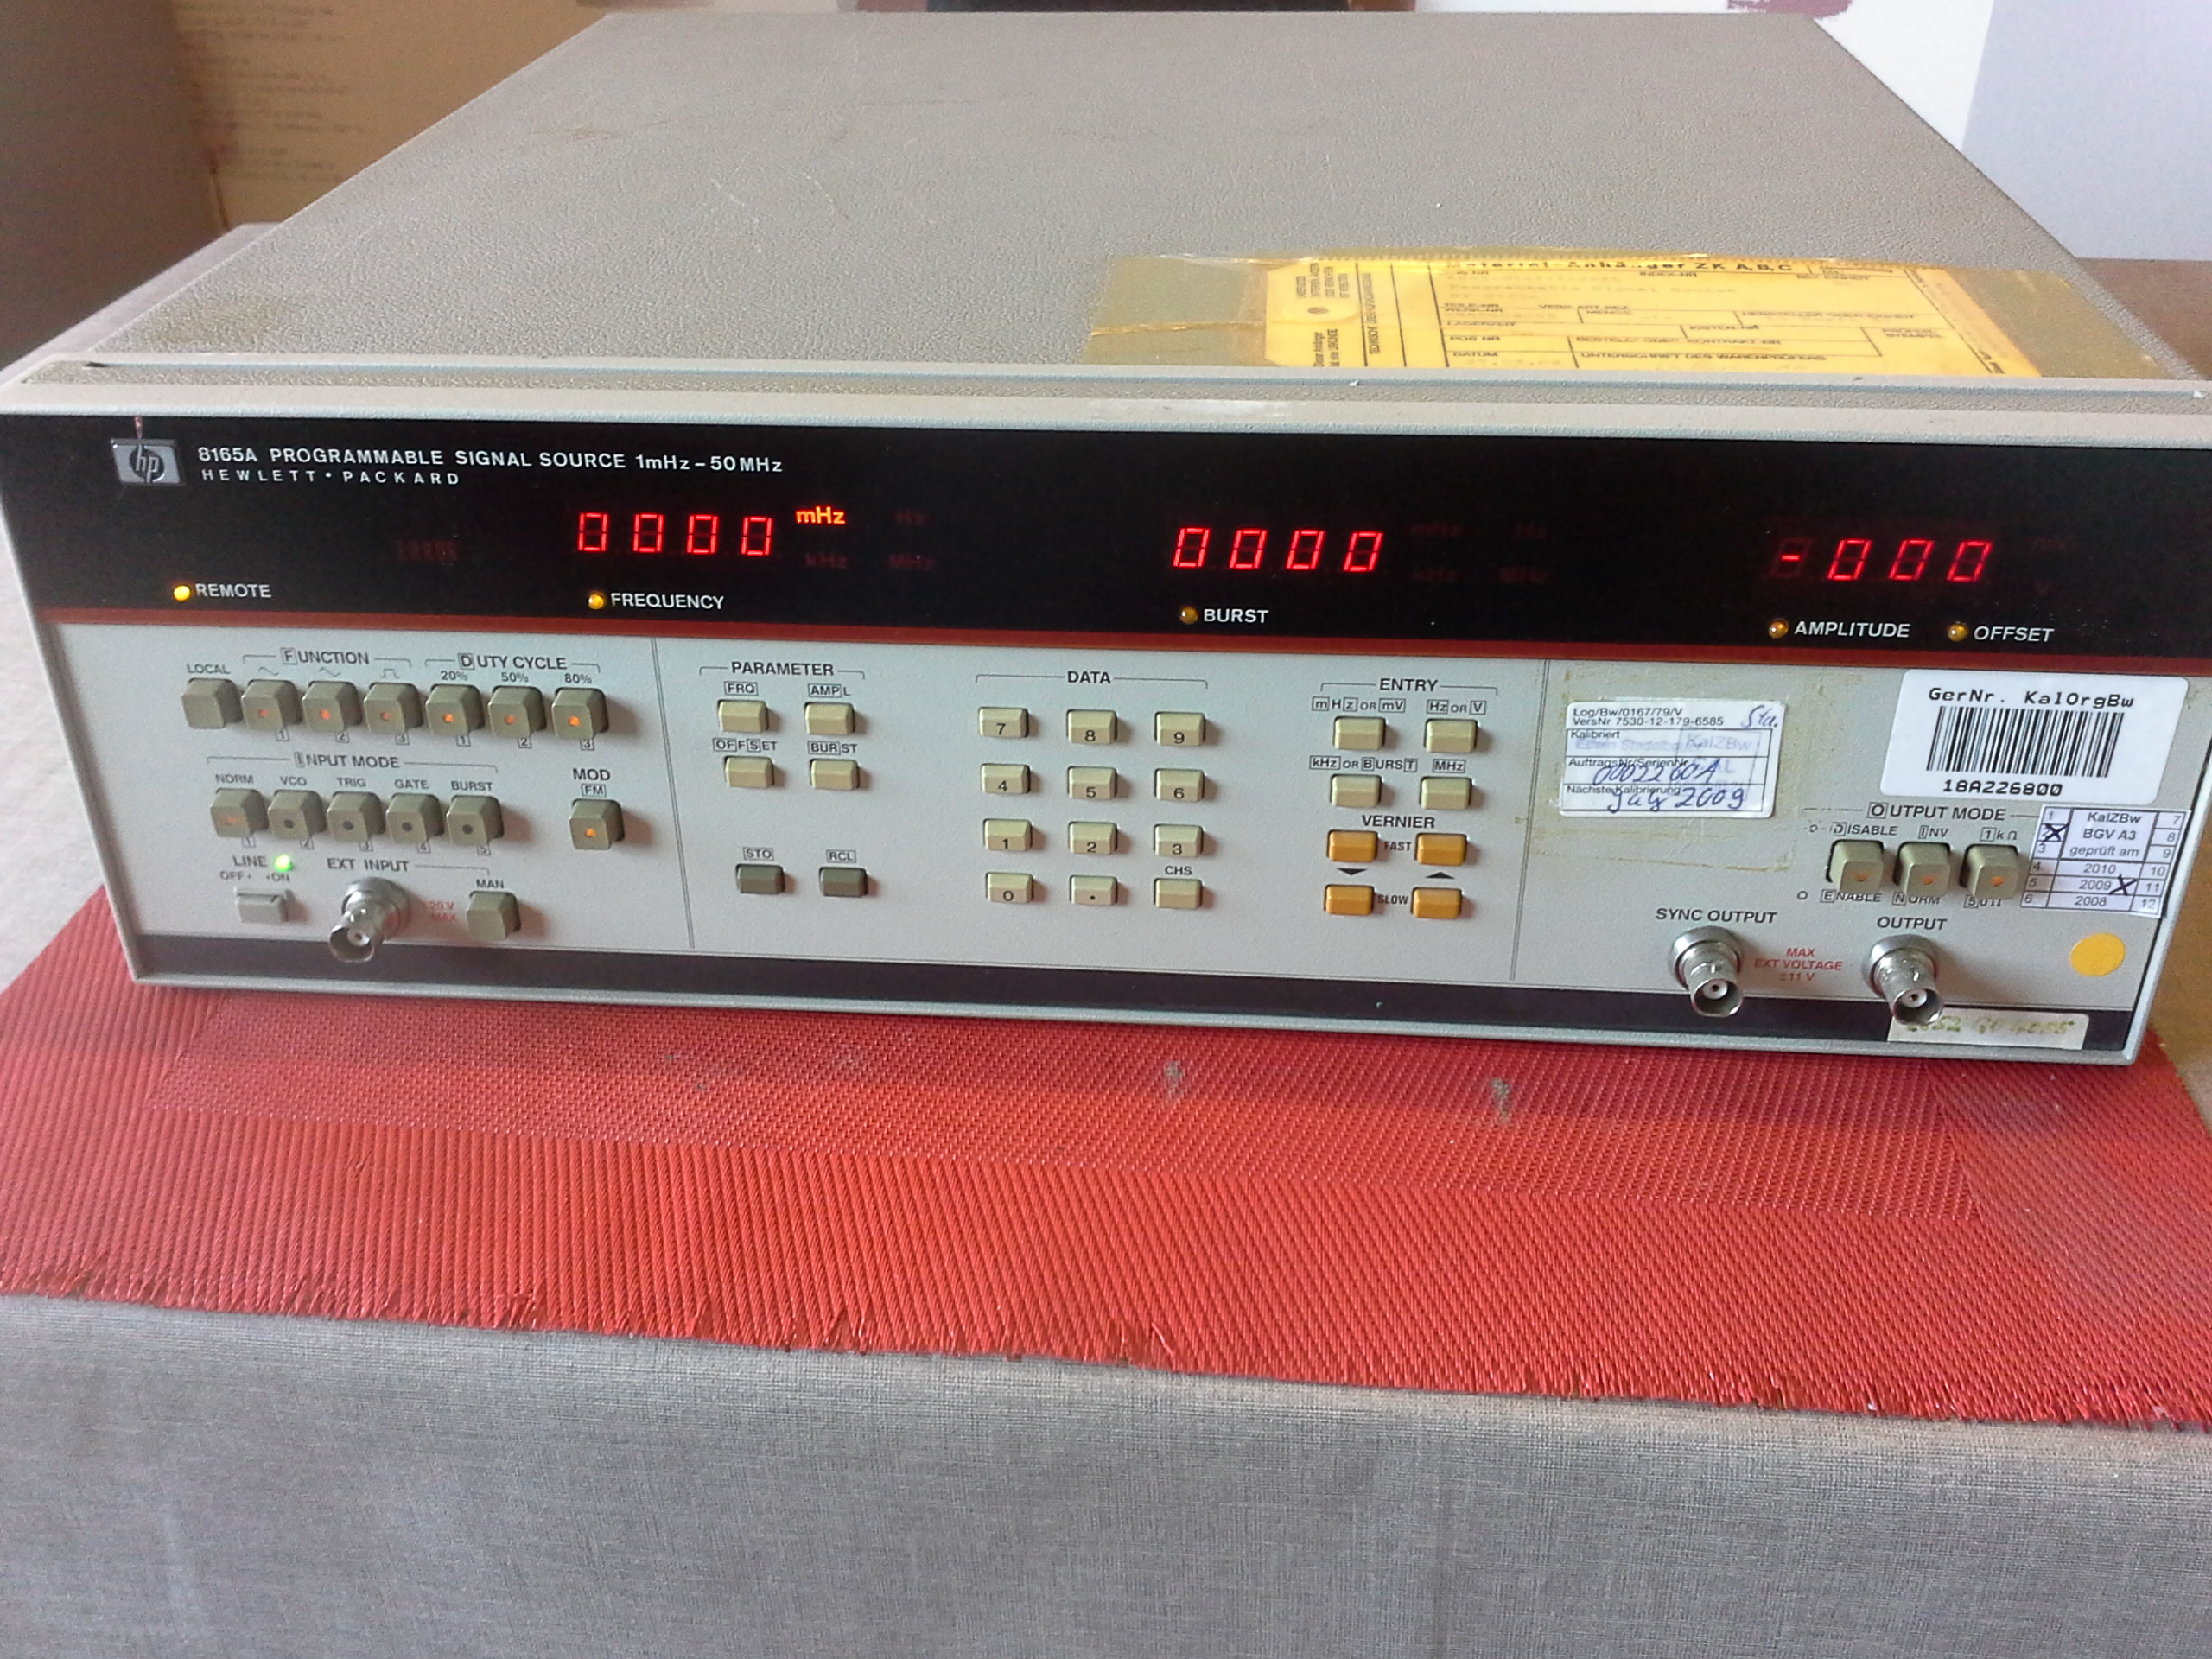 Hewlett Packard 8165A, Programmable Signal Source, 1 mHz....50 MHz